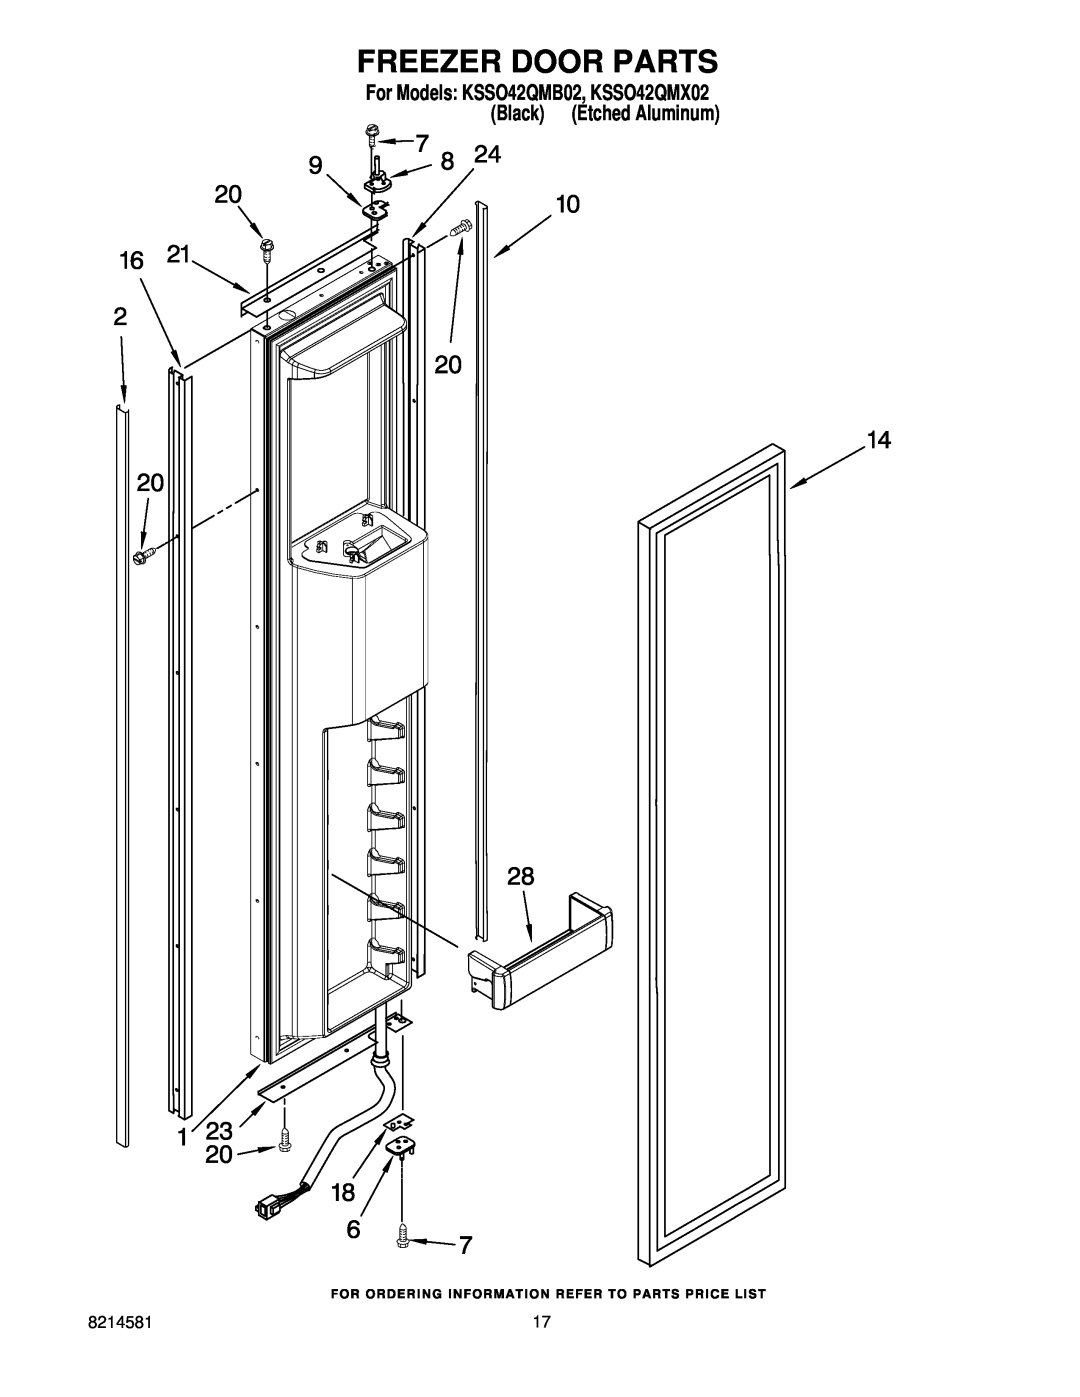 KitchenAid manual Freezer Door Parts, For Models KSSO42QMB02, KSSO42QMX02 Black Etched Aluminum 